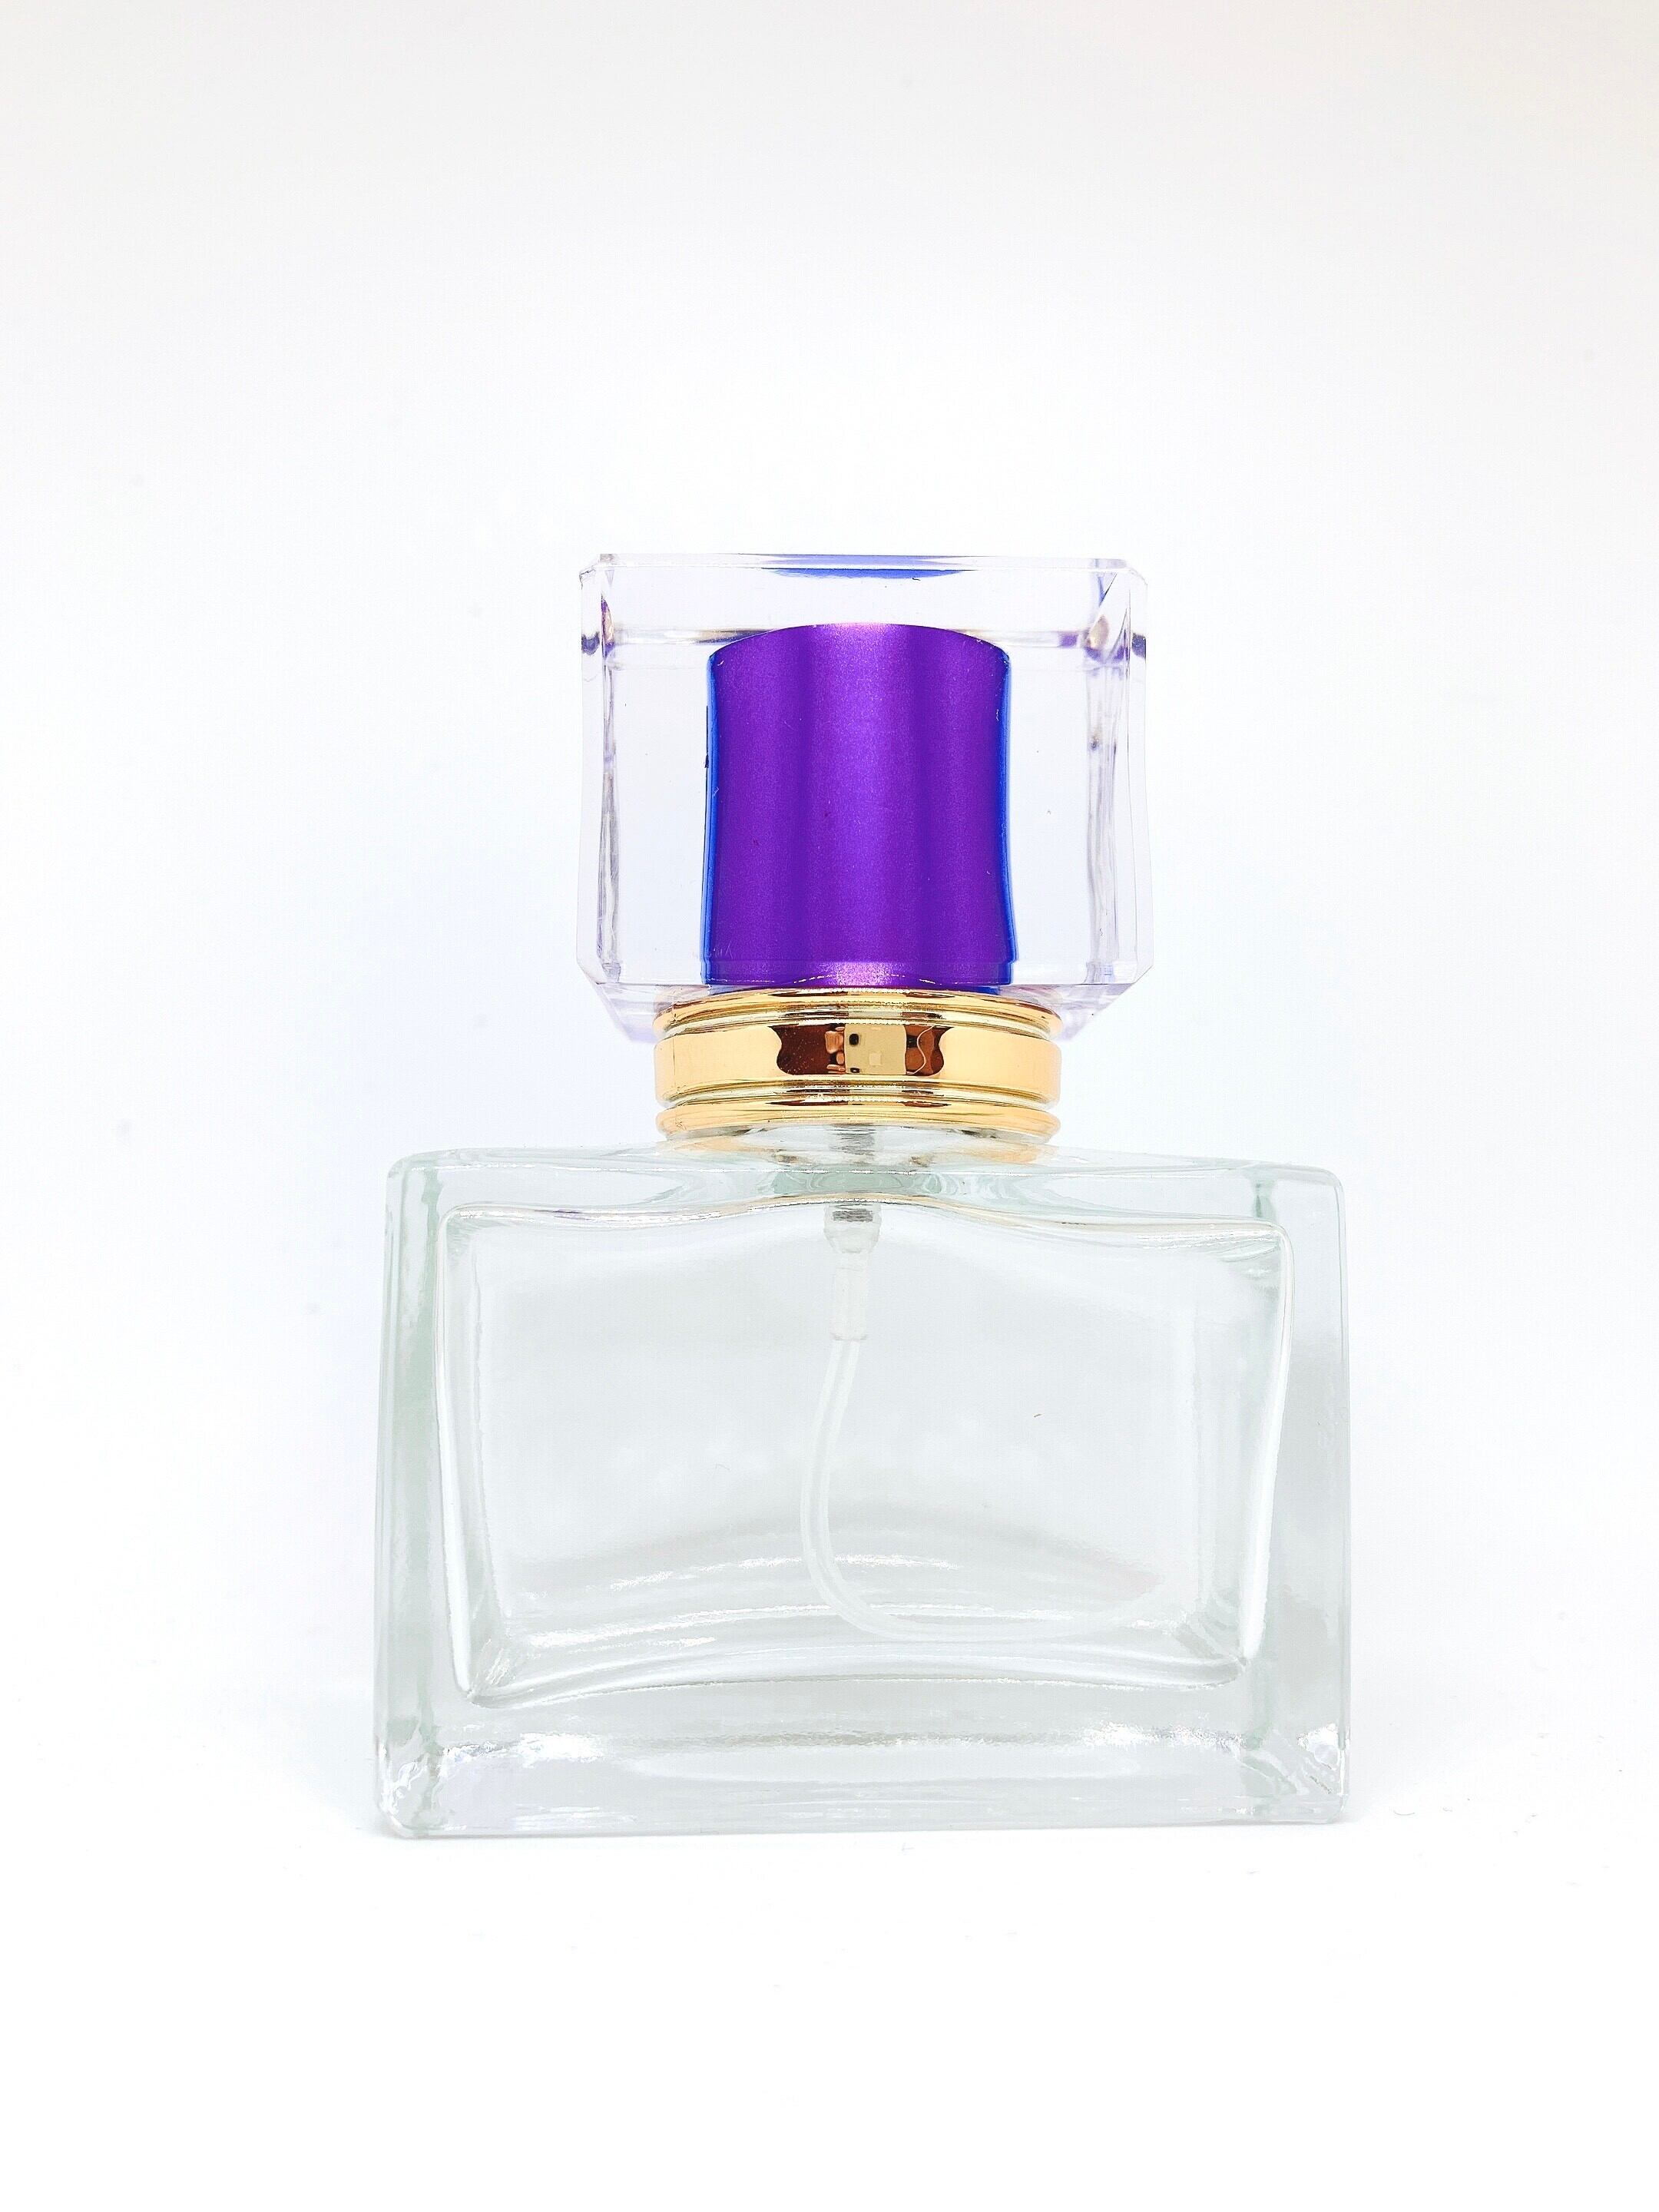 「その香水のせいかな」 ヘッド部分の紫が上品で美しい、それでいて存在感を醸し出す香水瓶です。 自作のアロマオイルなどを入れて、お部屋のどこへ置いても静かな主張をする不思議な色合いをお楽しみください。 その香りと共にあった思い出が、この先鮮明に蘇るでしょう。 内容：スプレー容器 (パープル) 1本 容量：30ml 素材：ガラス(容器) 横：5.9cm　縦：3.2cm　高：8.2cm（蓋含む） ※光の加減・パソコンの設定により、カラーが実際の商品と若干異なることがございます。